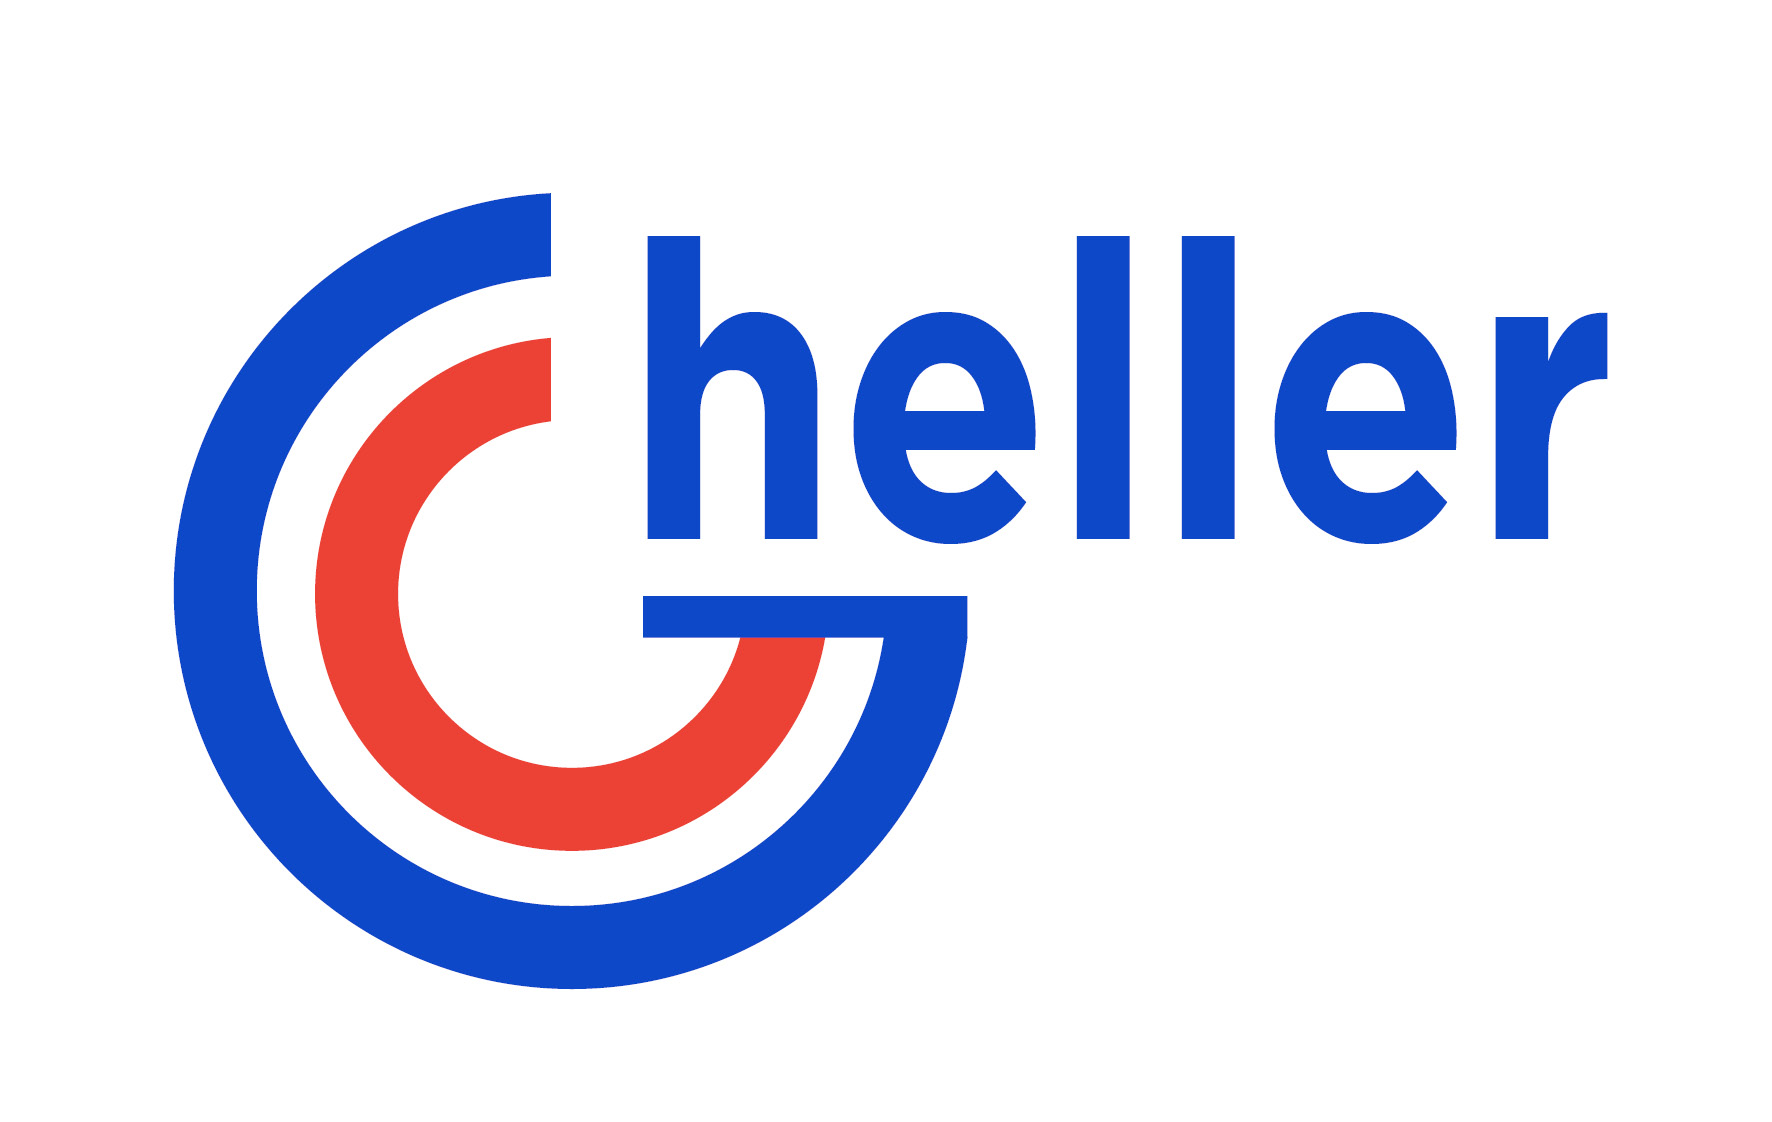 Gheller-Logo-Partner-Komet-Frese-Treviso-Distributore.jpg